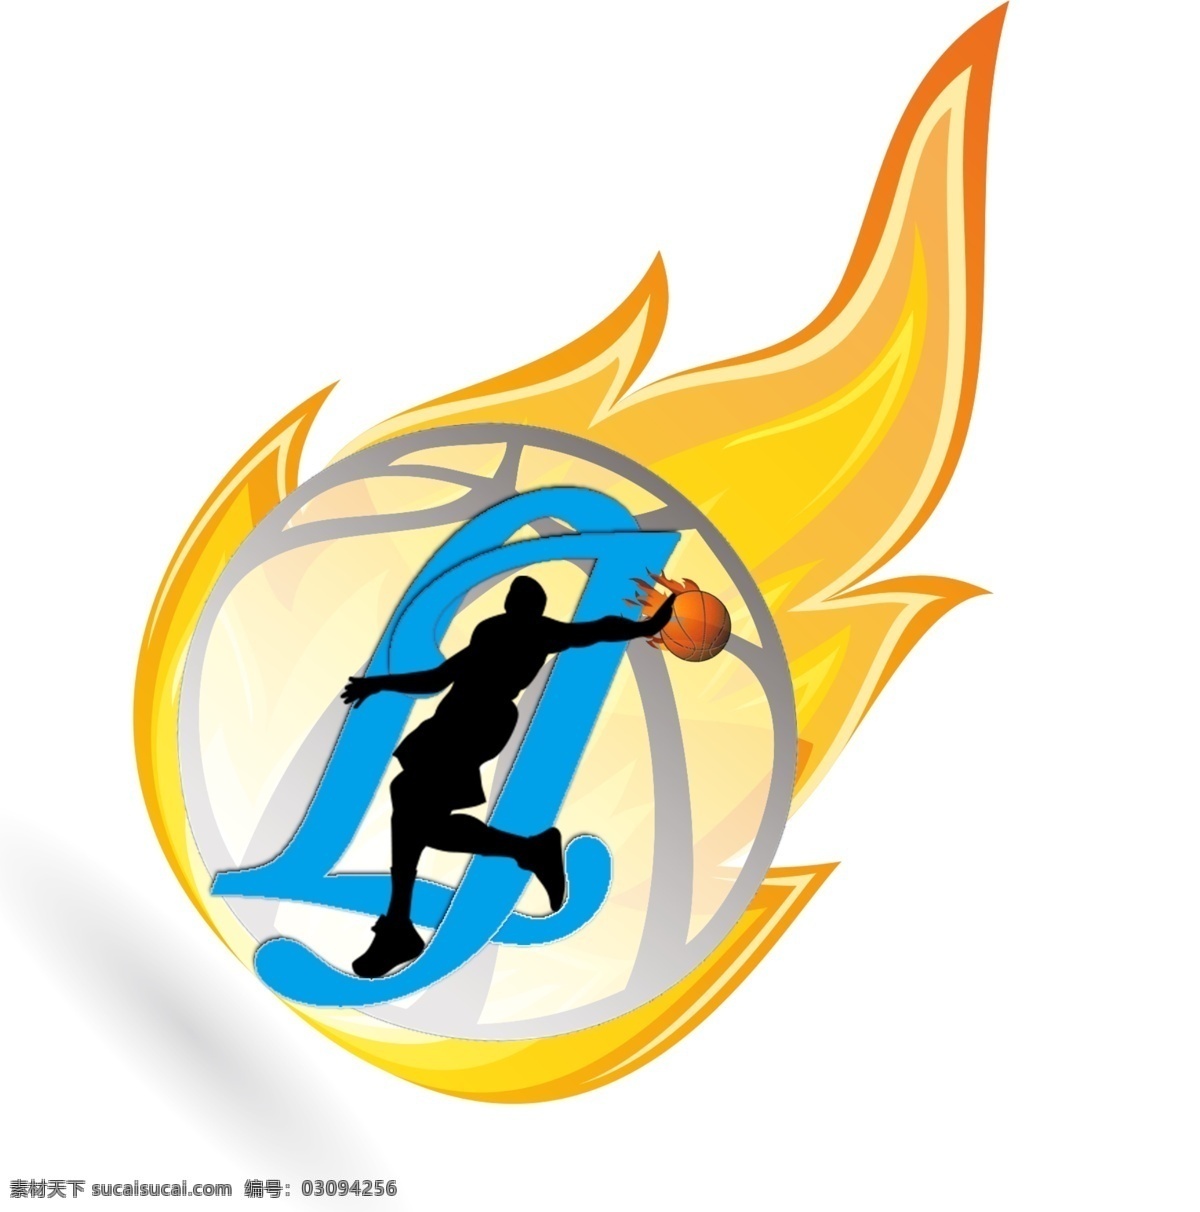 logo 标志 标志设计 广告设计模板 篮球 社团 源文件 模板下载 吉林 psd源文件 logo设计